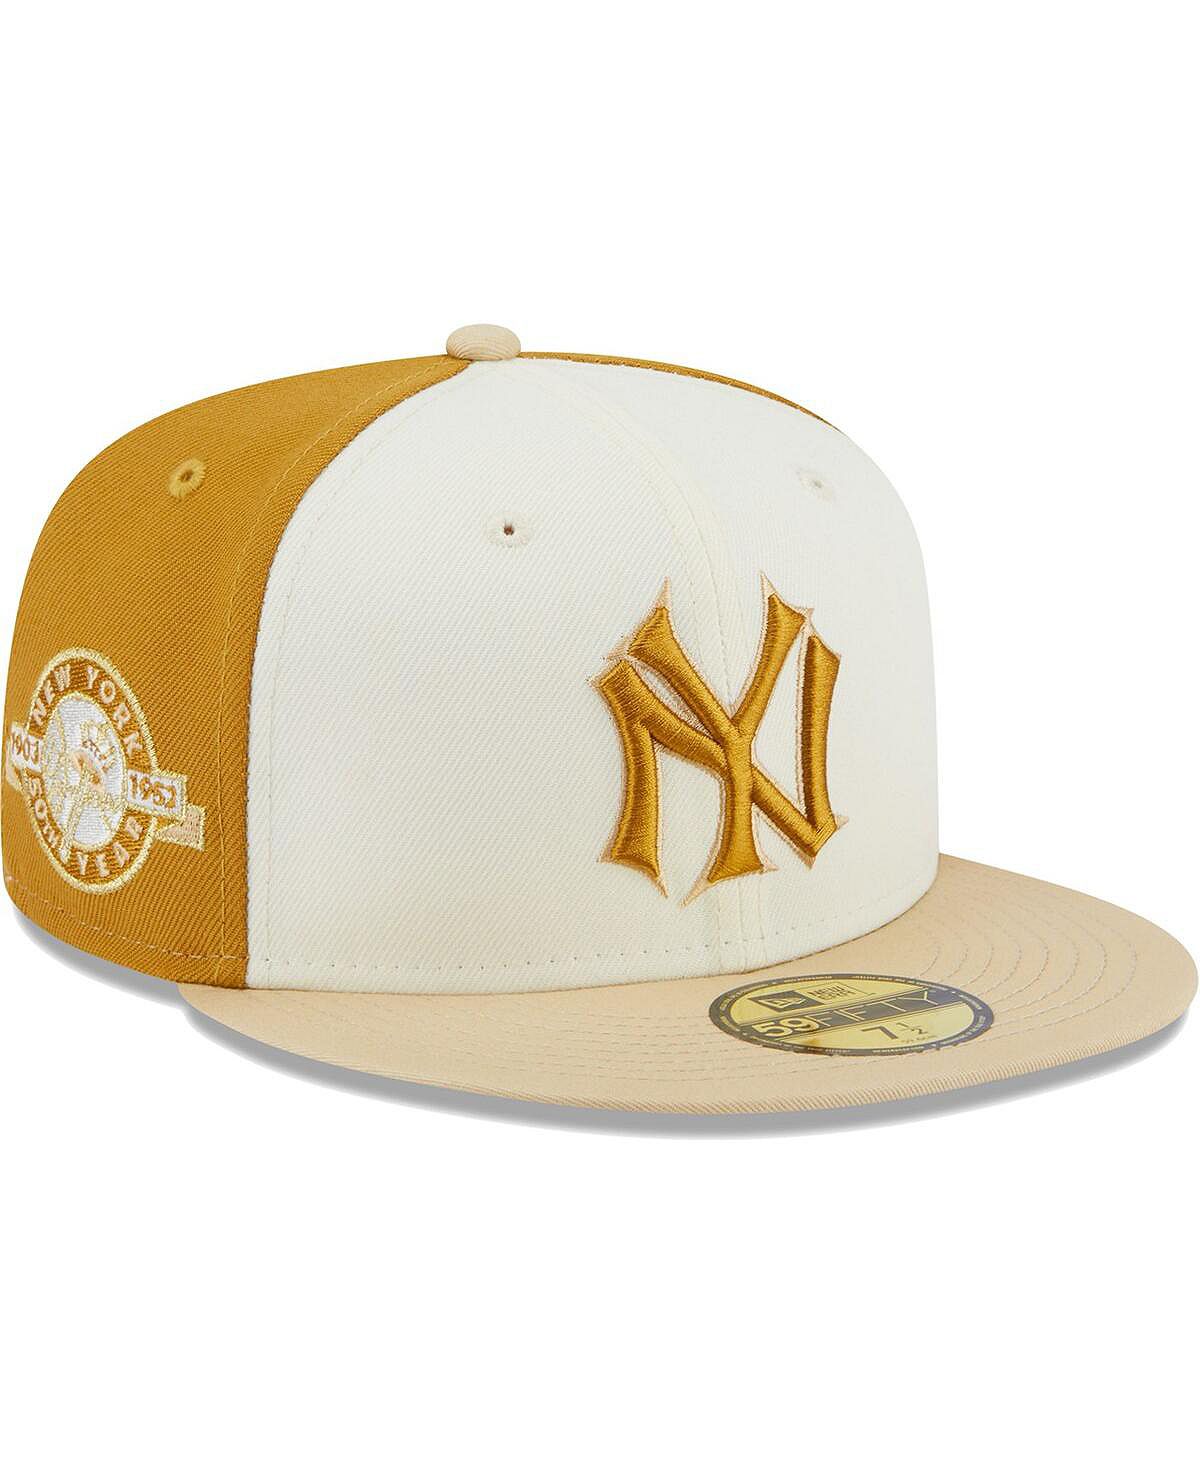 Мужская кремовая, золотая кепка New York Yankees Chrome Anniversary 59FIFTY. New Era